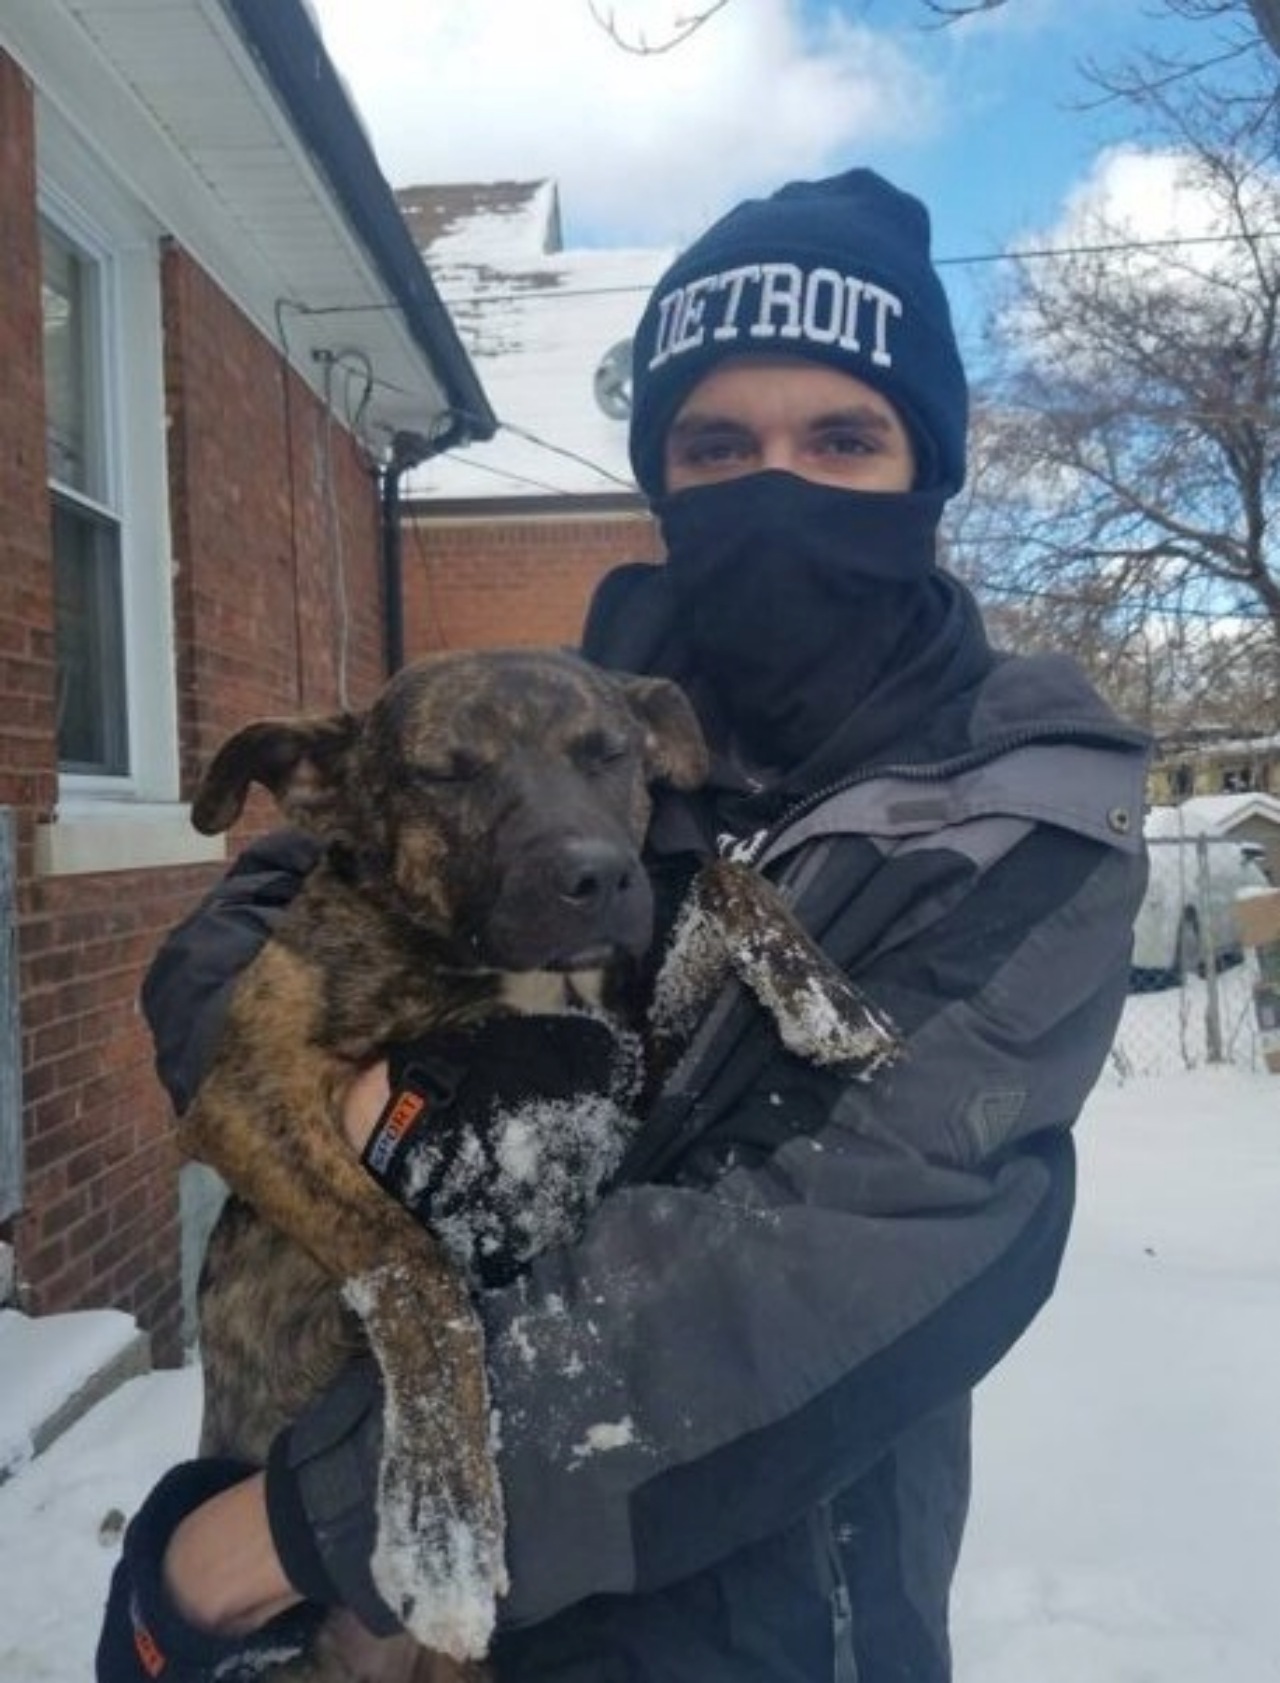 Cane sotto la neve: salvato da un vicino